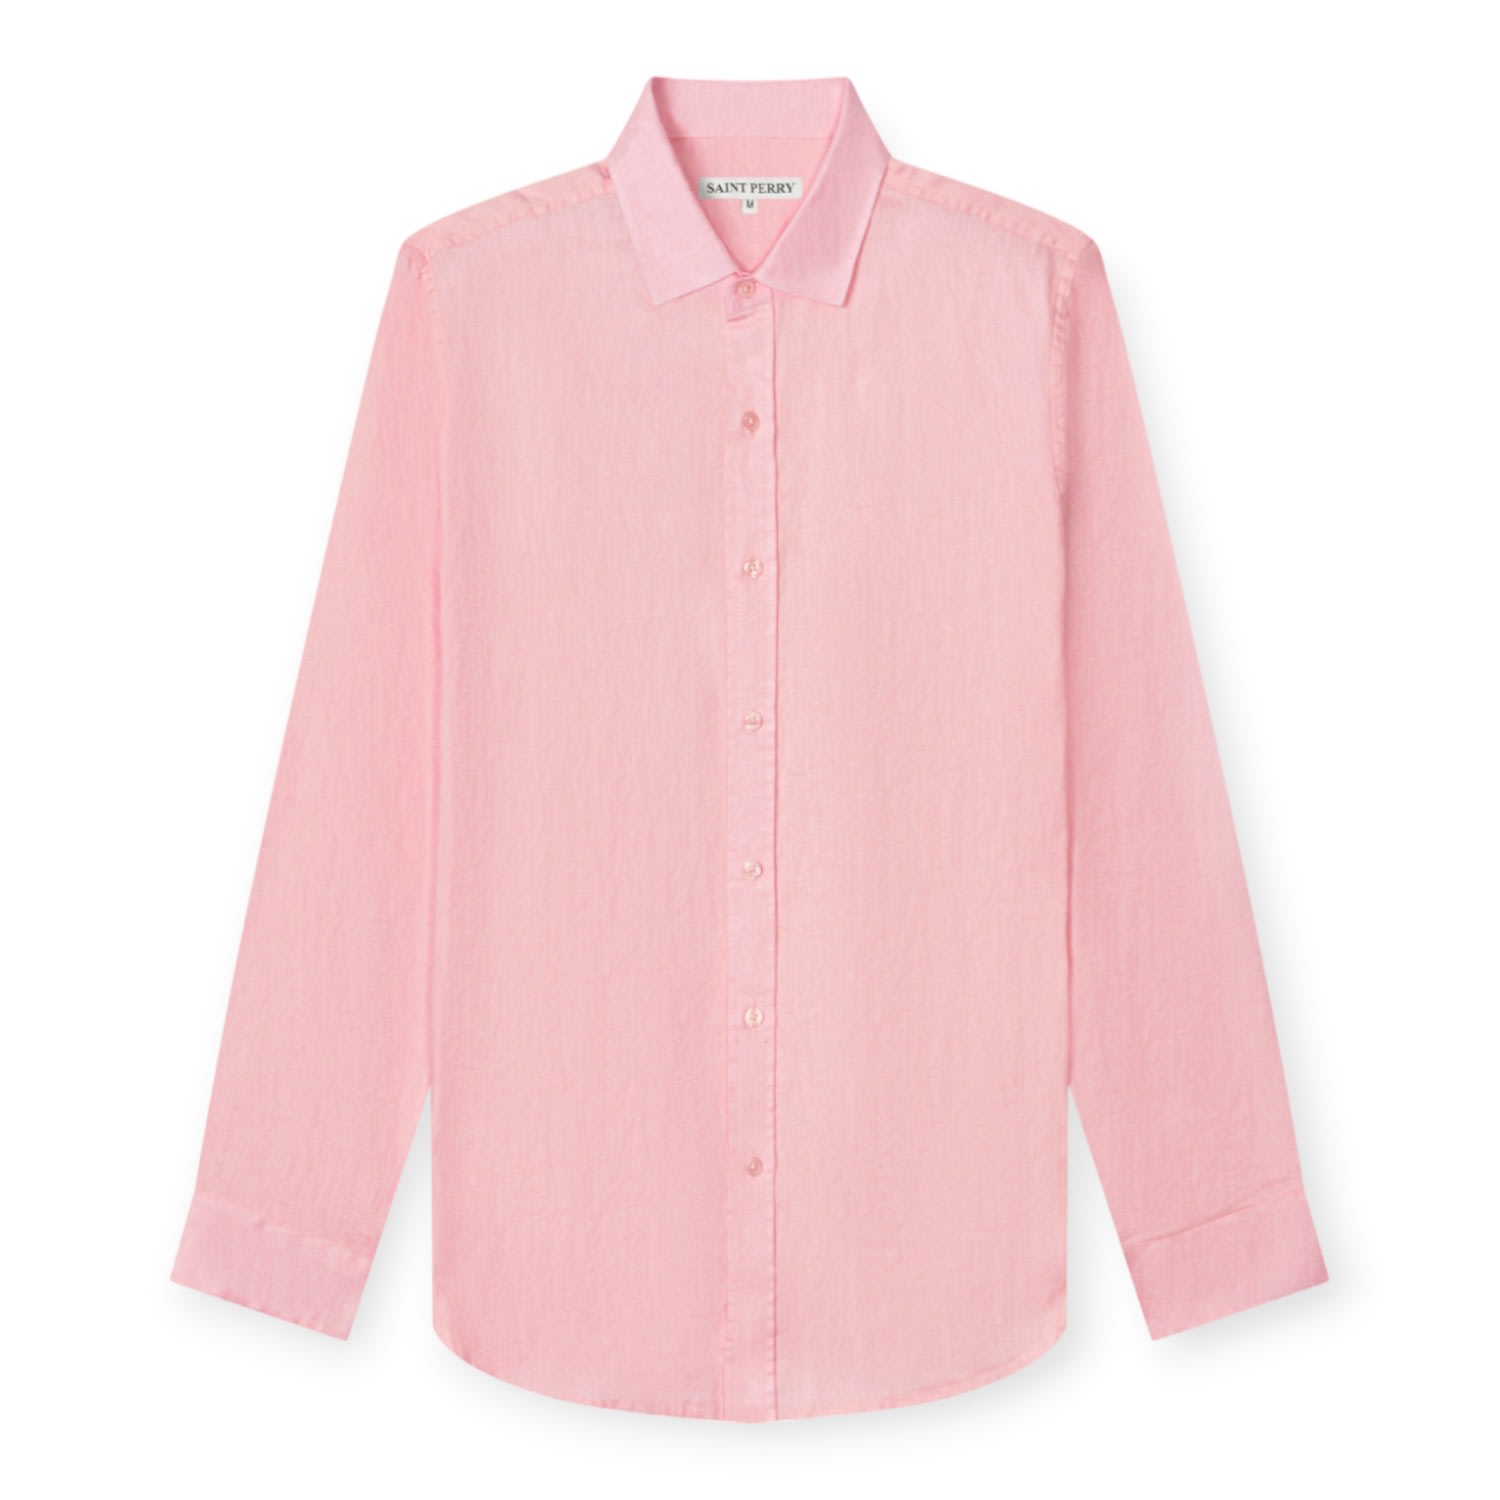 Men's Pink / Purple Lightweight Linen Shirt - Pink Small SAINT PERRY